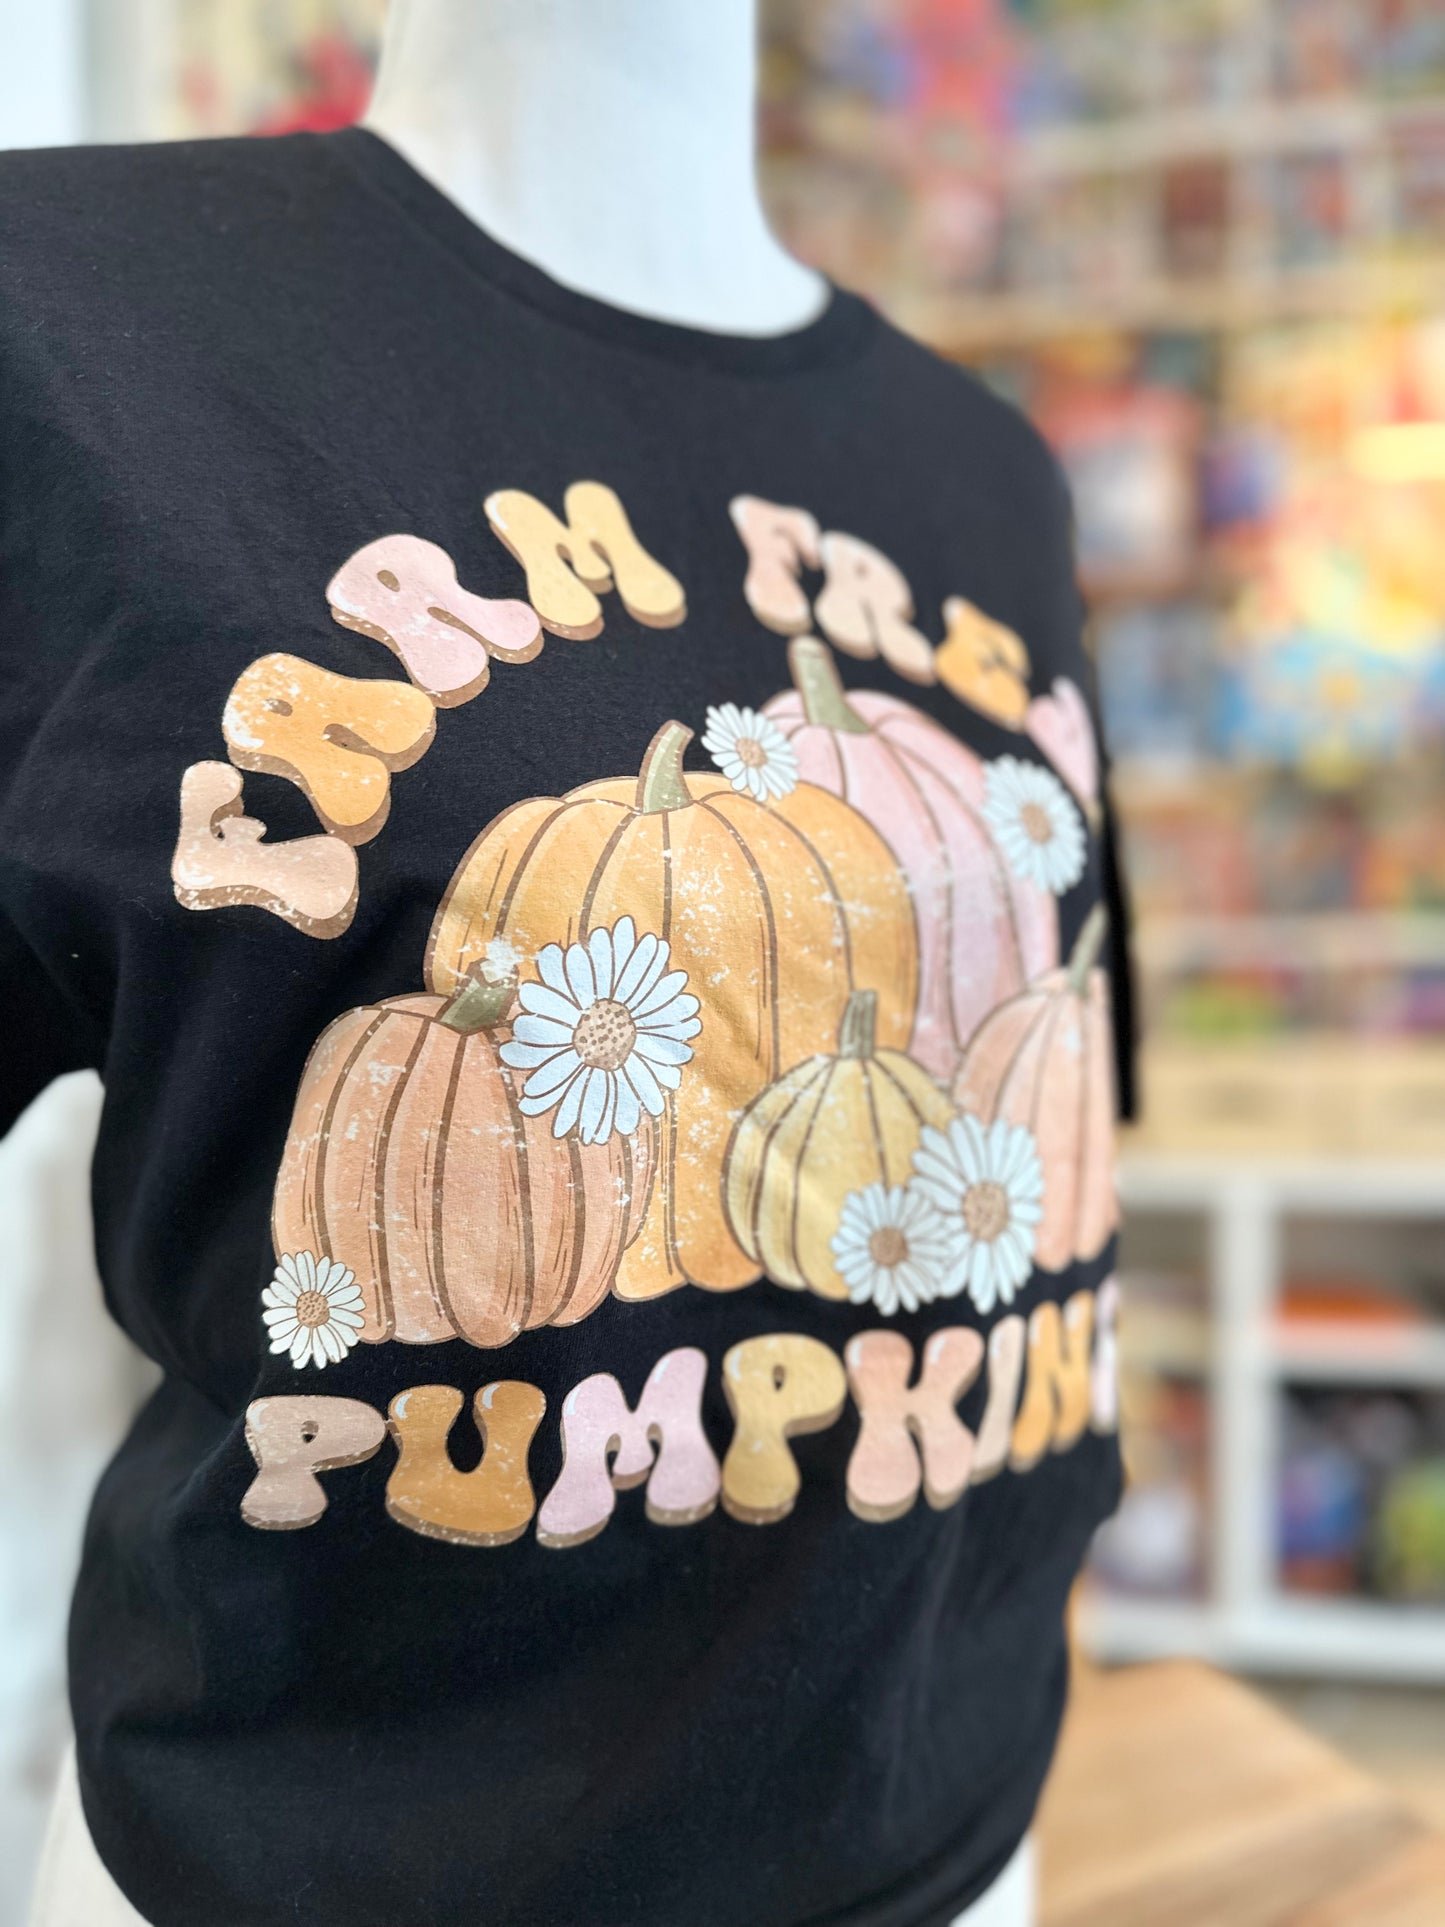 Farm Fresh Pumpkins Tshirt